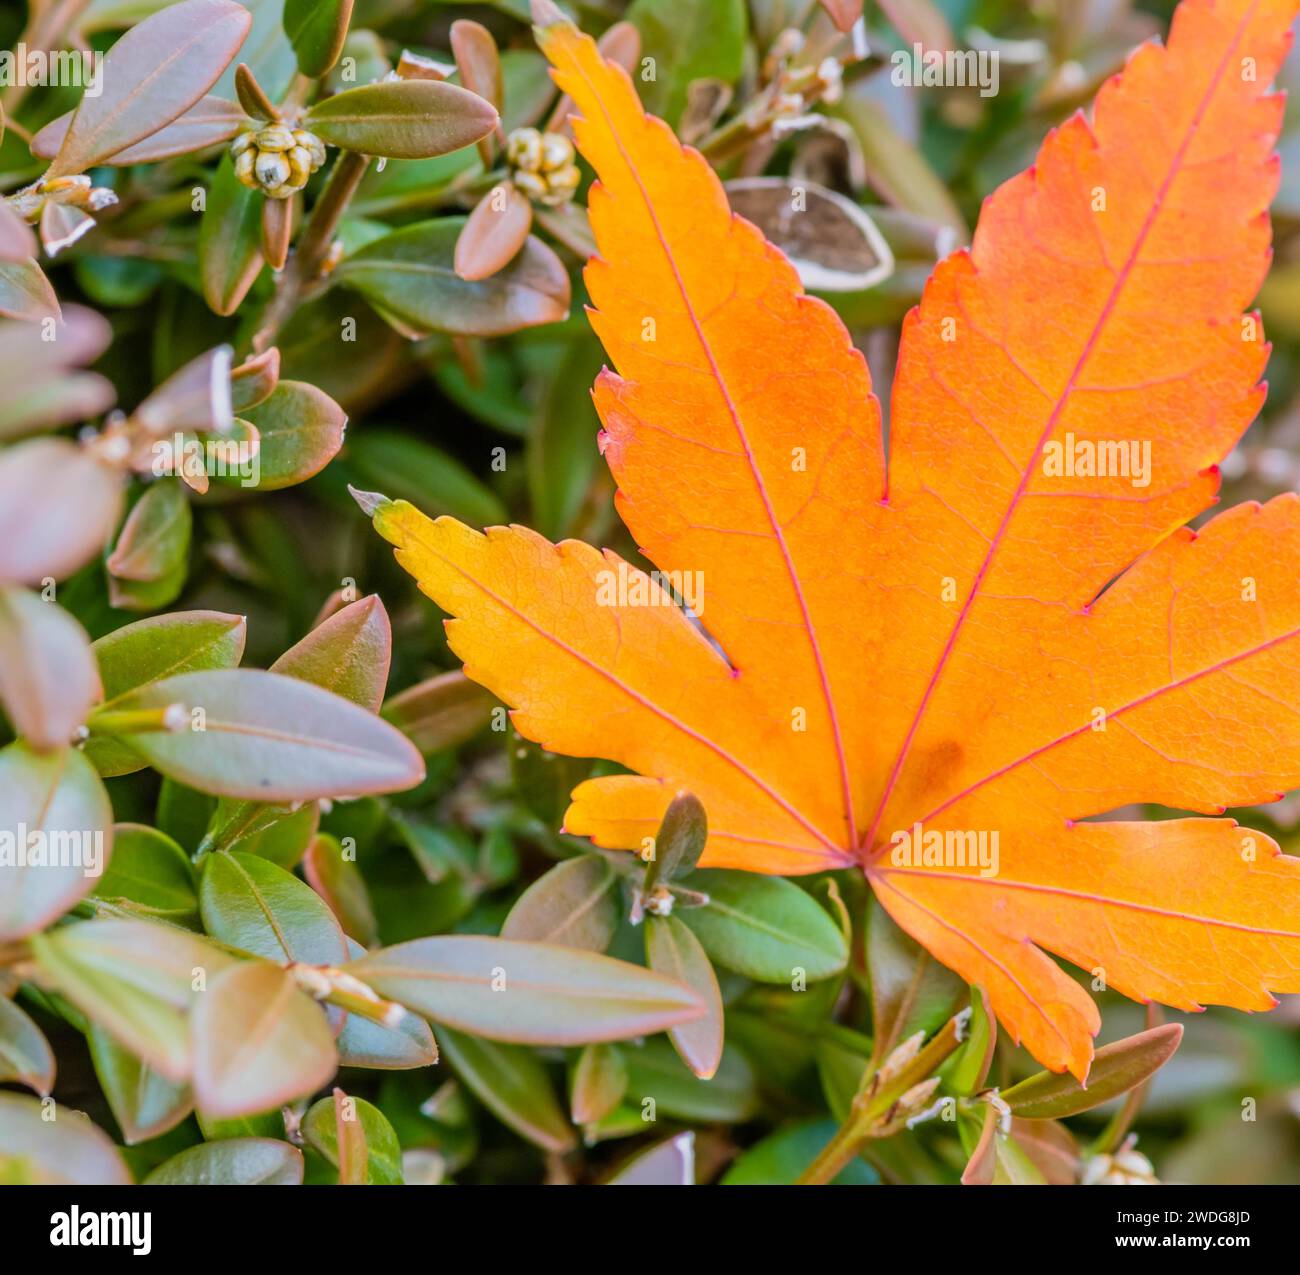 Primo piano di una singola foglia arancione ingiallibile con vene rosse su un cespuglio verde, Corea del Sud, Corea del Sud Foto Stock